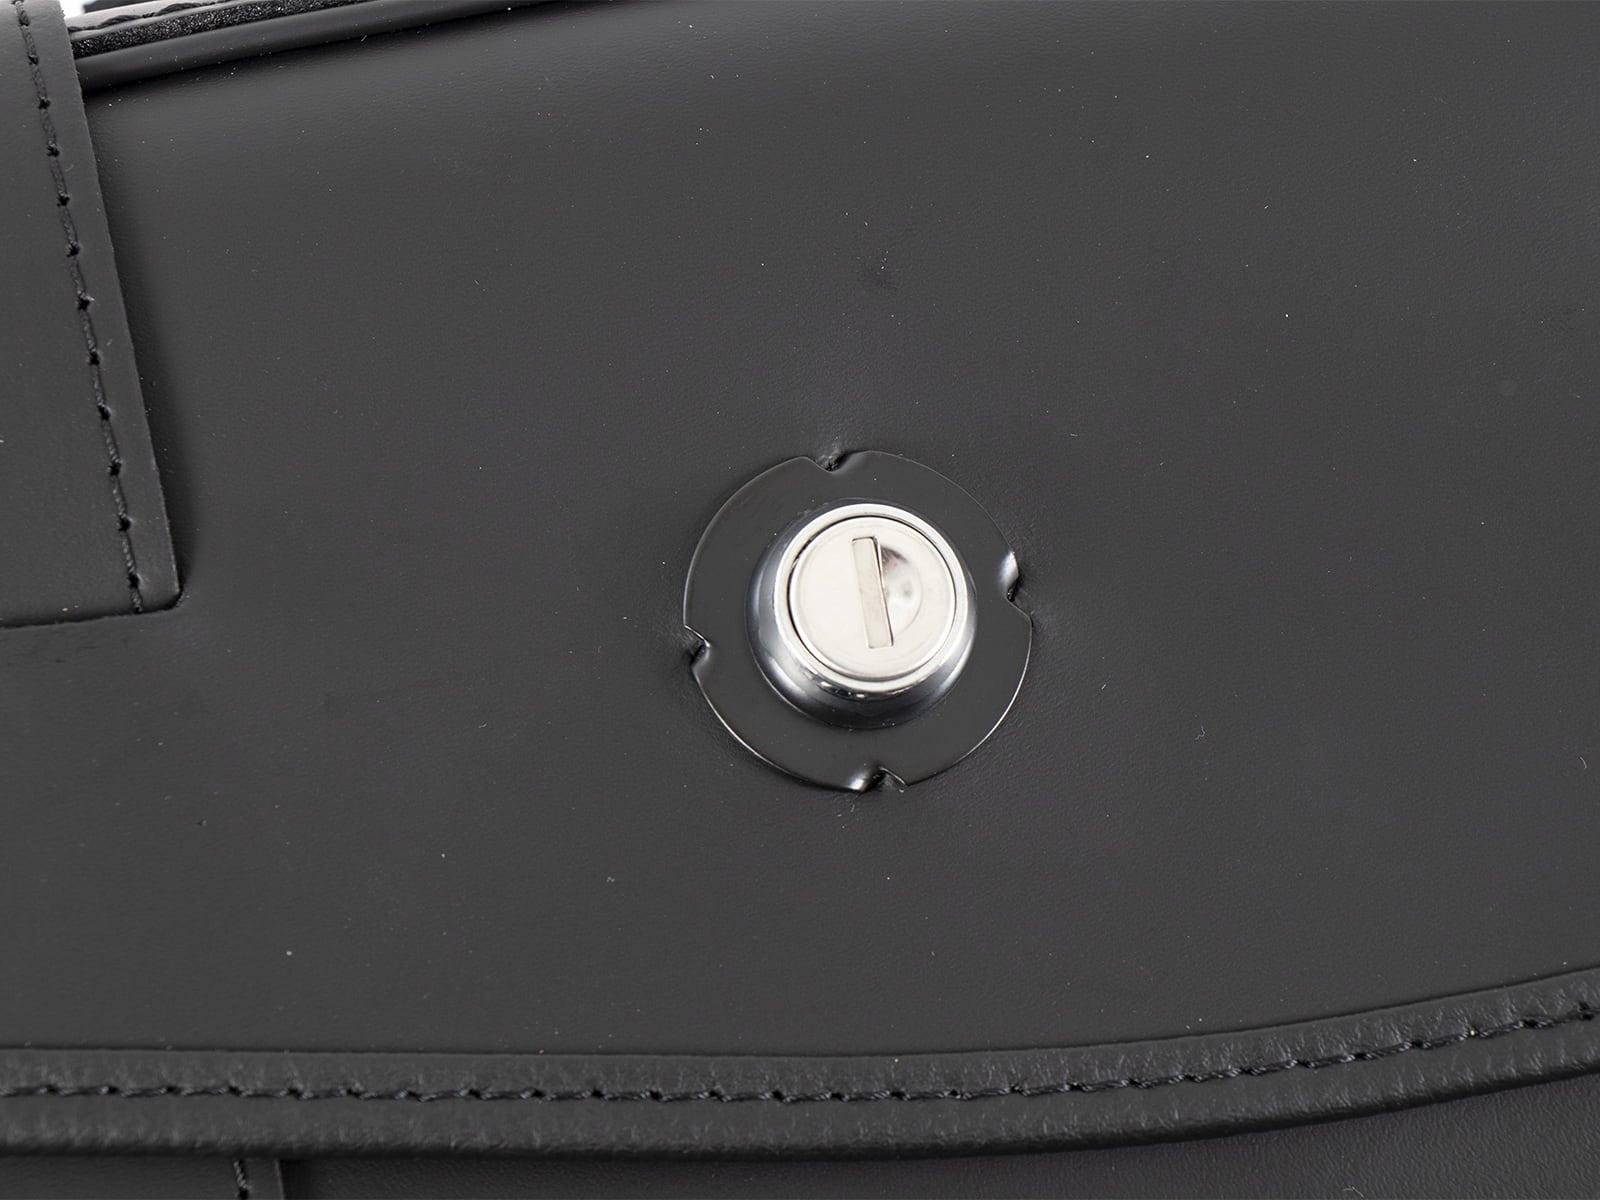 Rugged leather bag set black for C-Bow holder